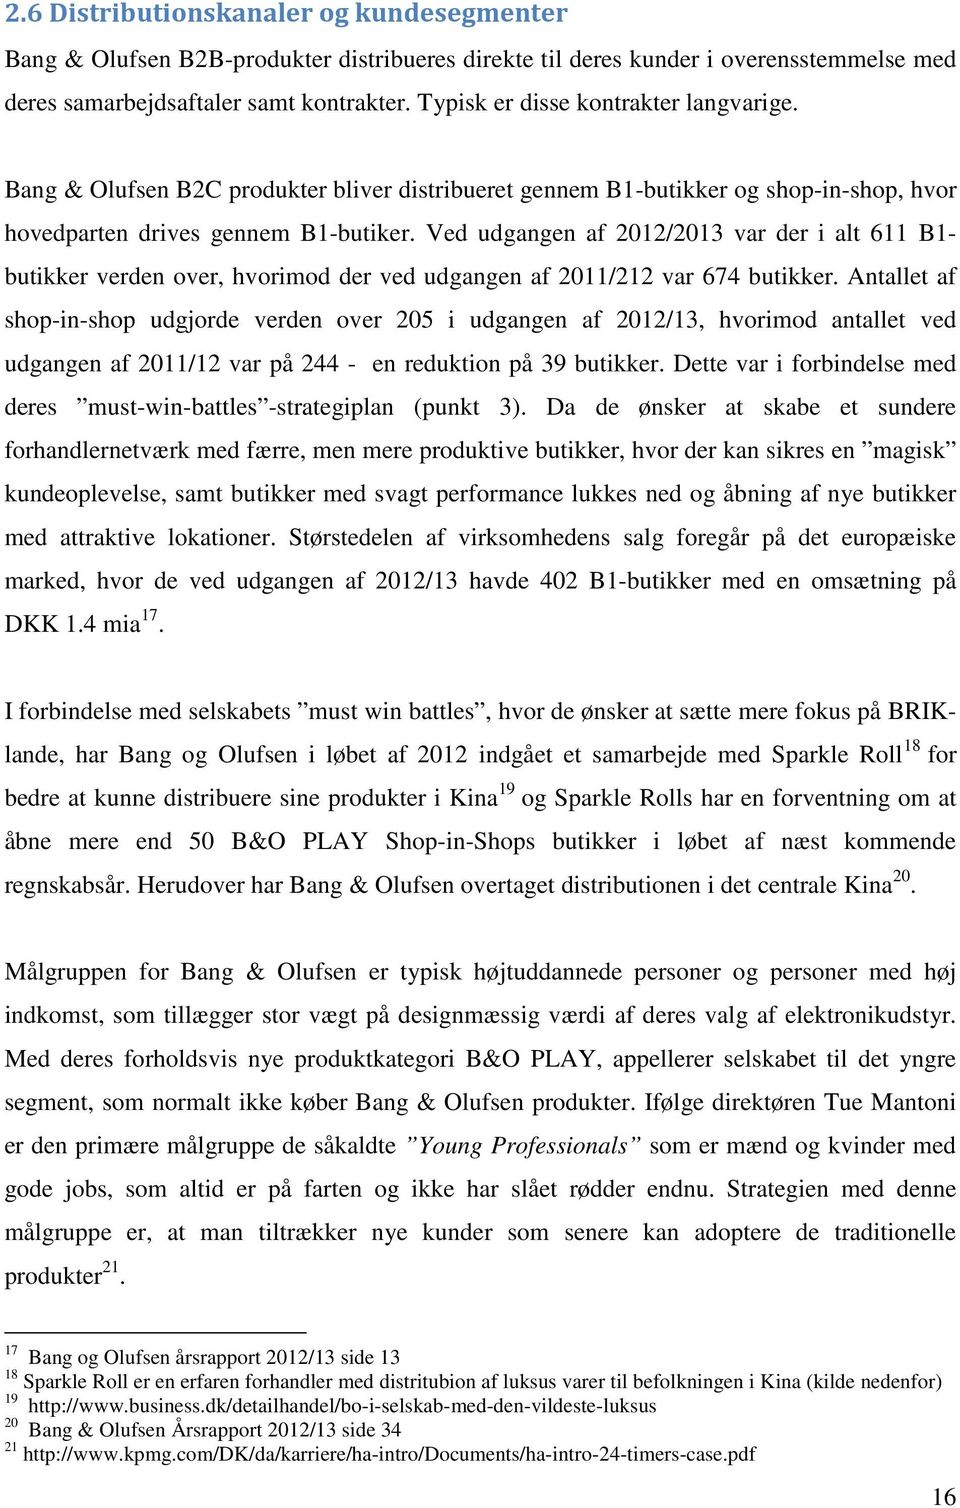 Strategisk analyse og værdiansættelse af Bang & Olufsen A/S - PDF Free  Download